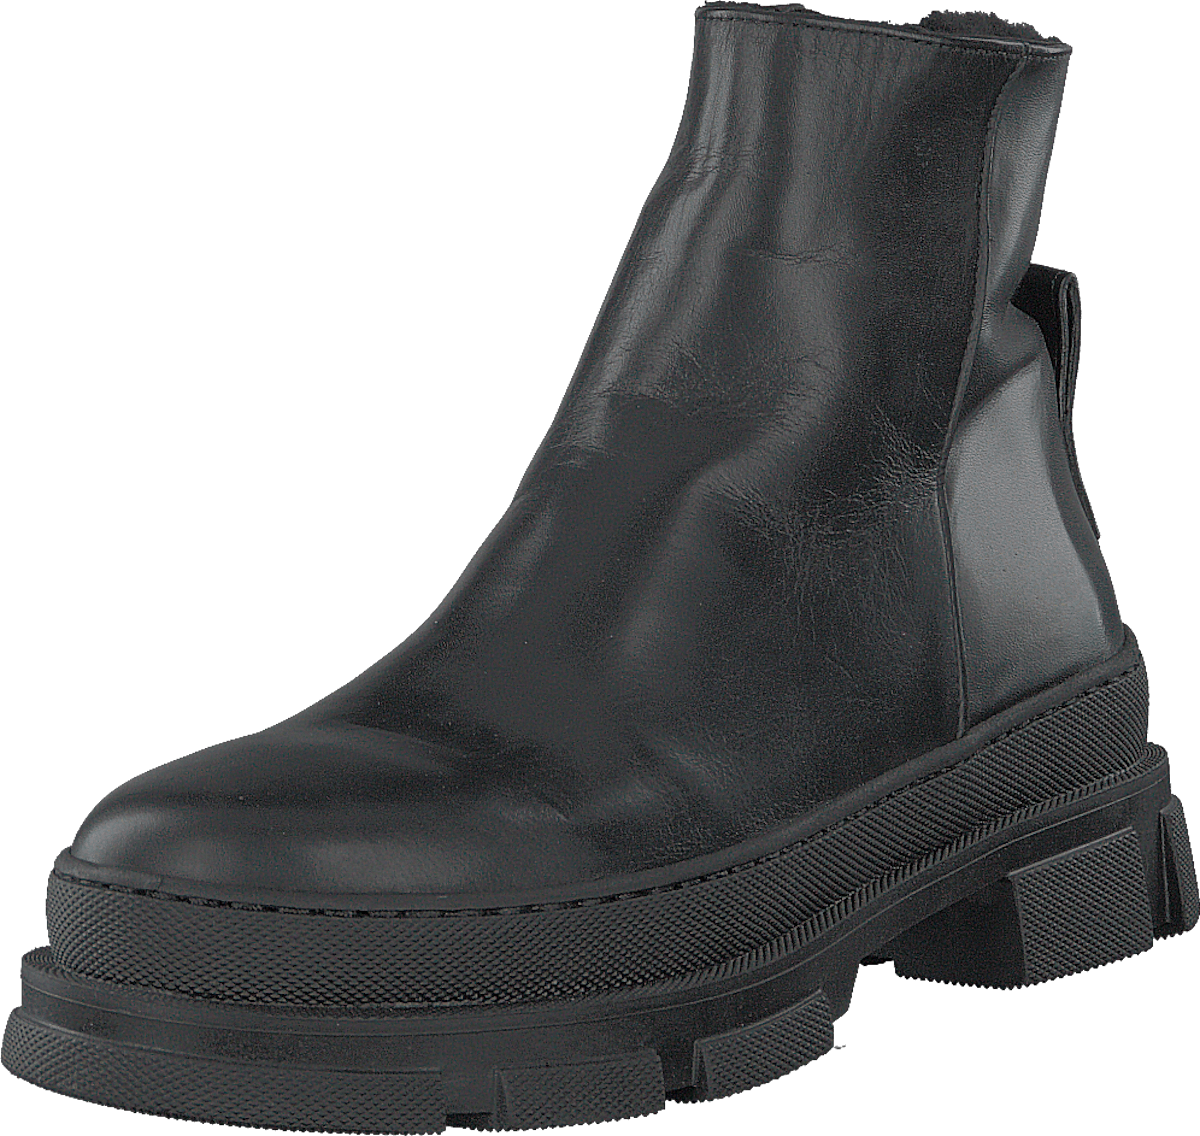 Boot Black/black Lamb Wool